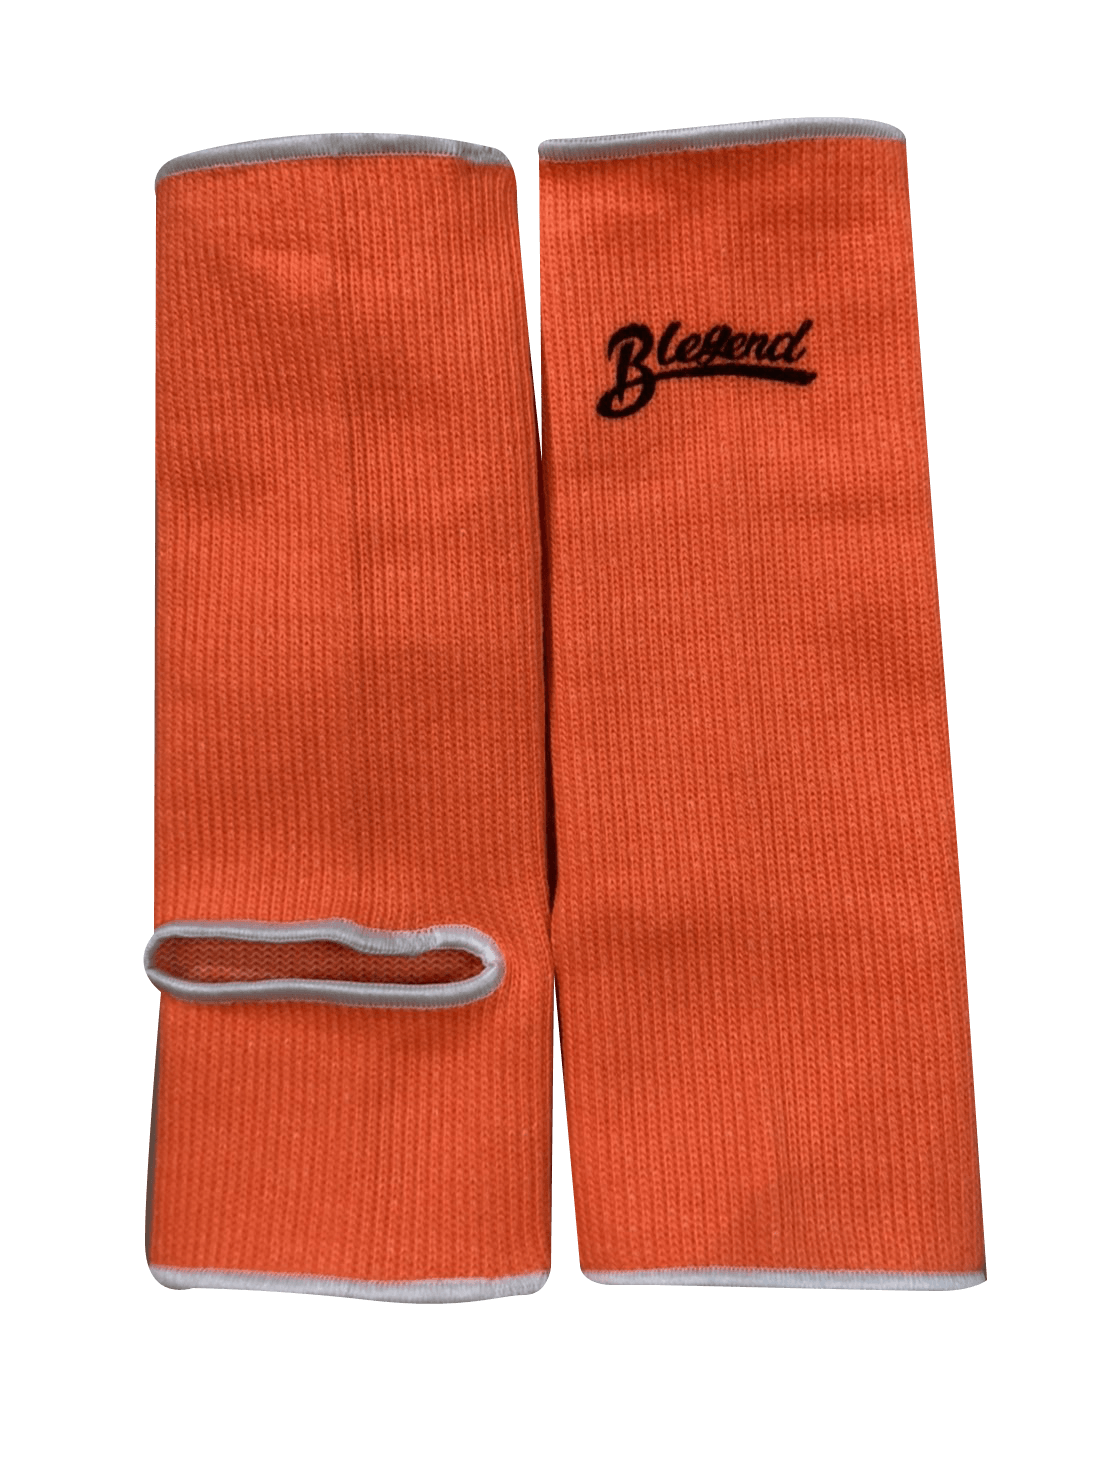 BLEGEND Ankleguards Orange Blegend